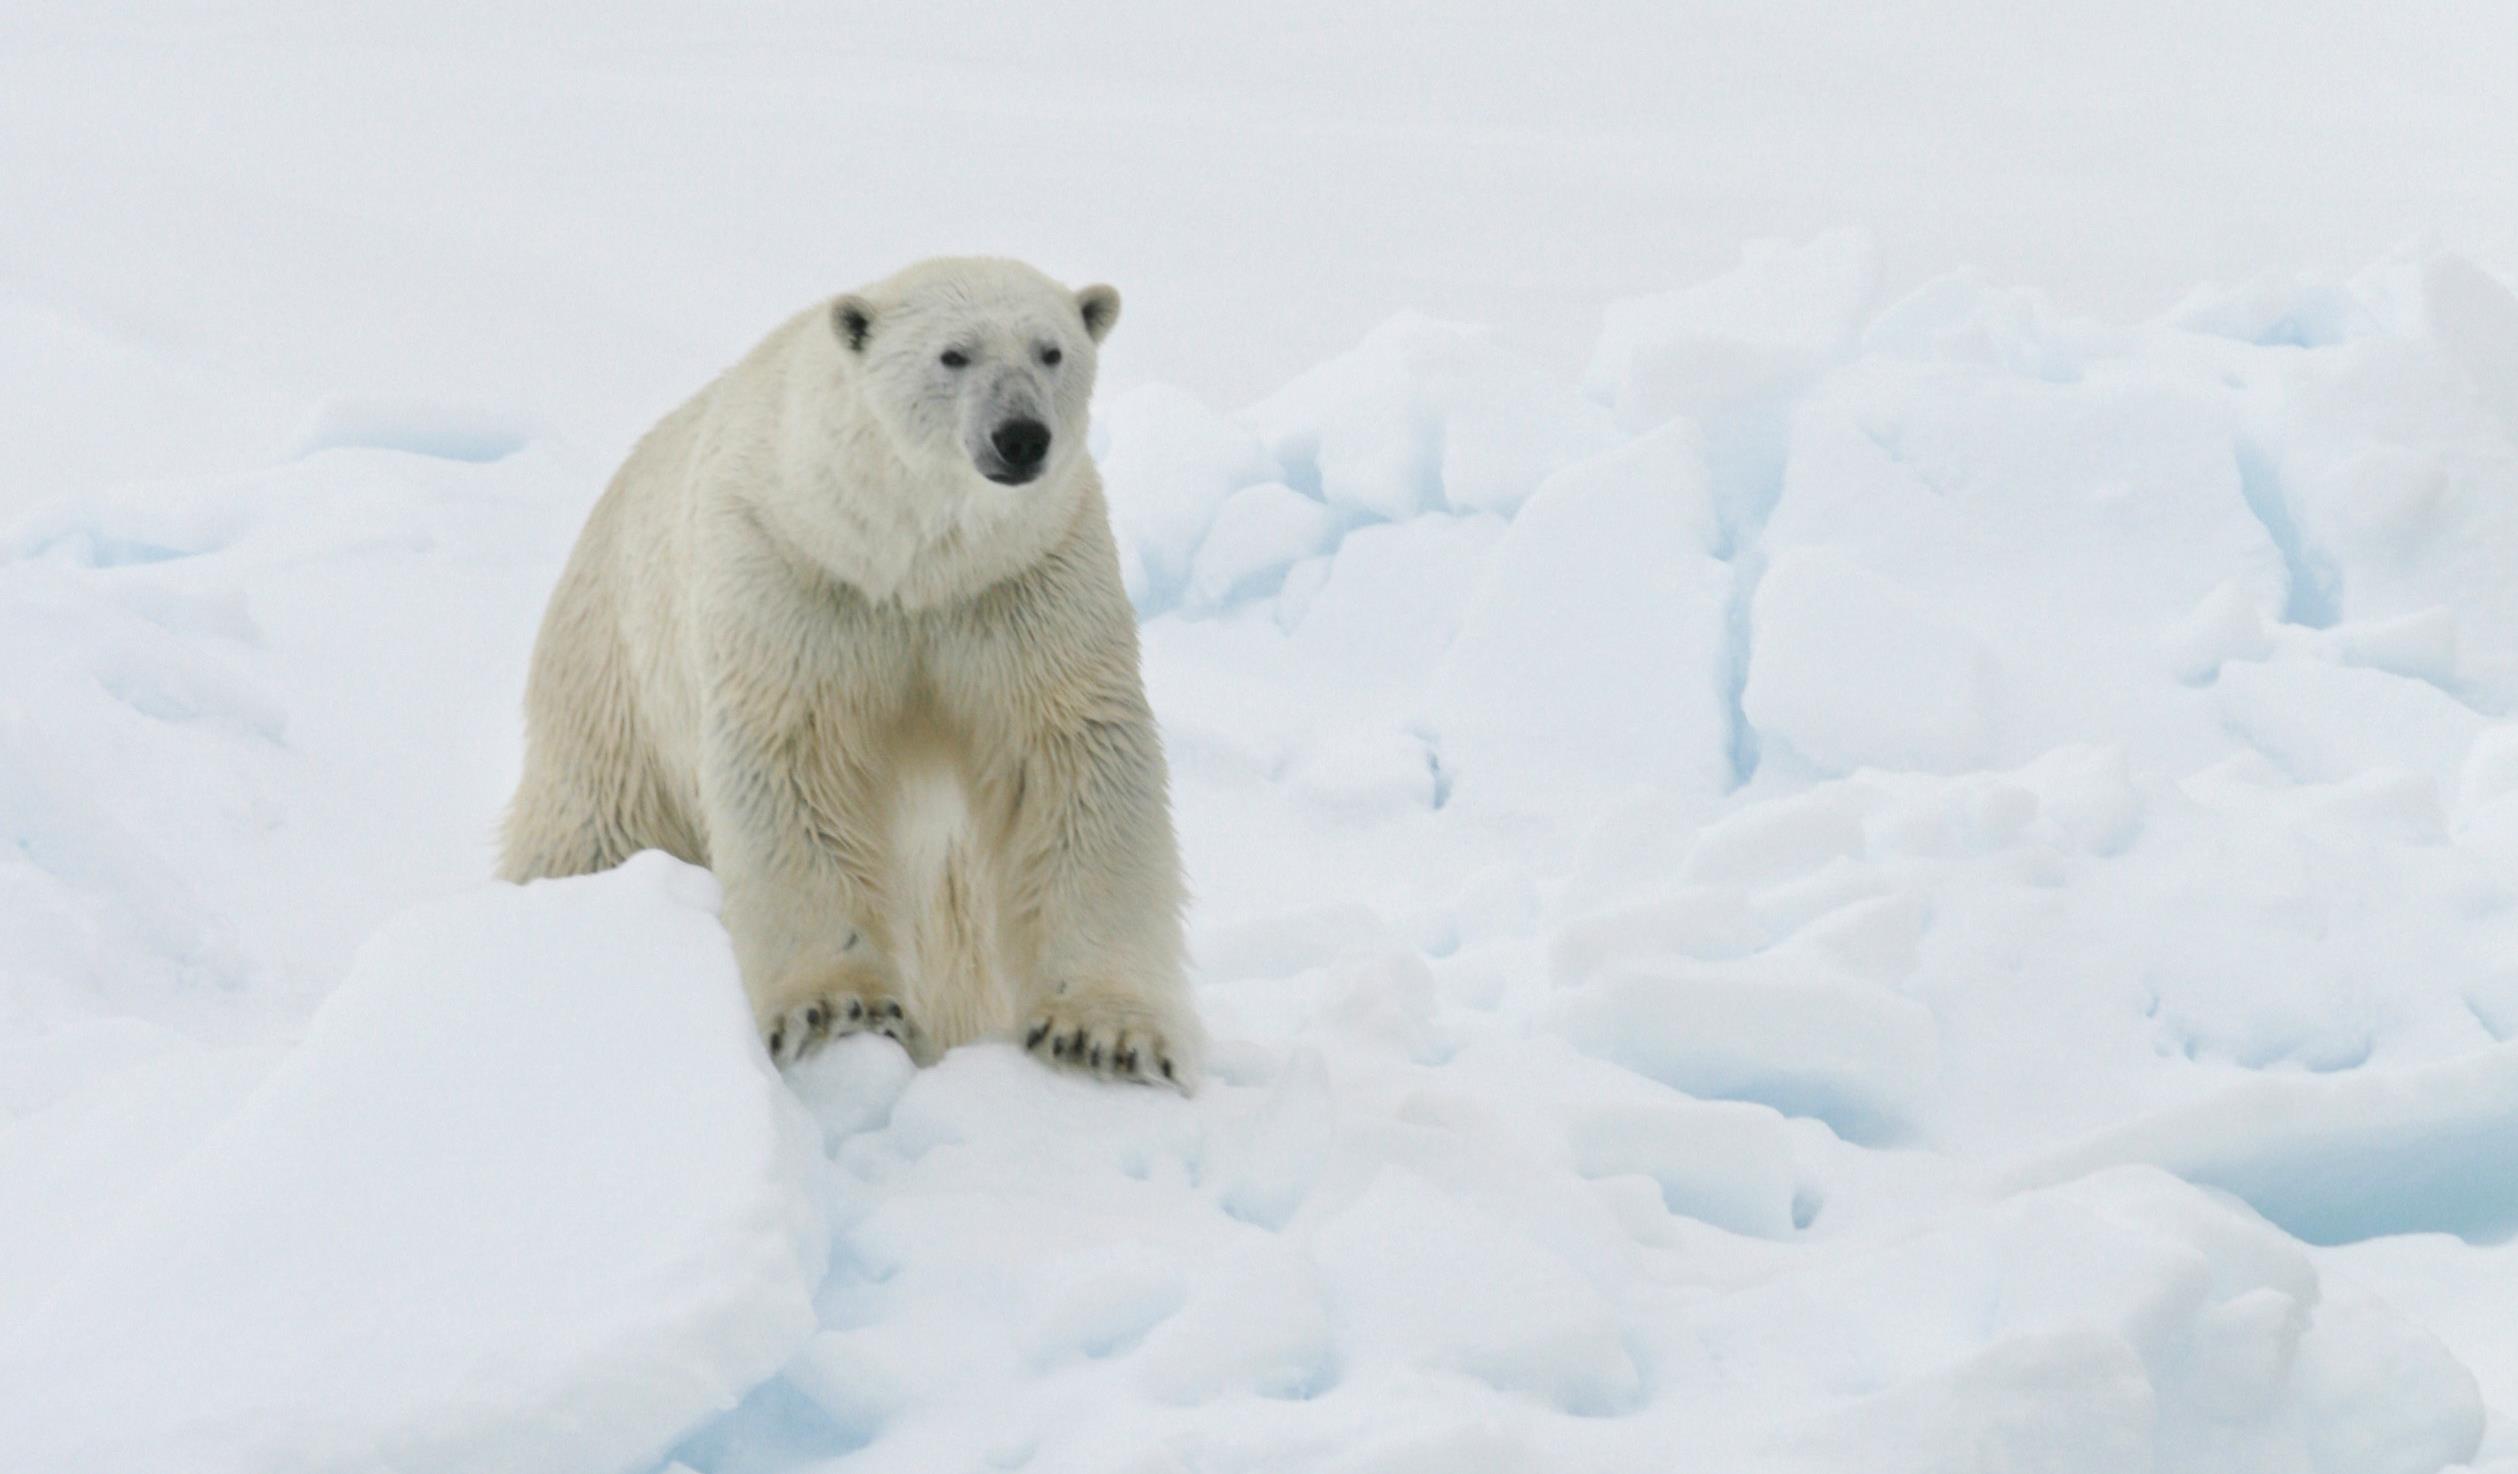 Μην έρθετε, έχουμε κρύο και αρκούδες: Χωριό διώχνει τουρίστες για την έκλειψη